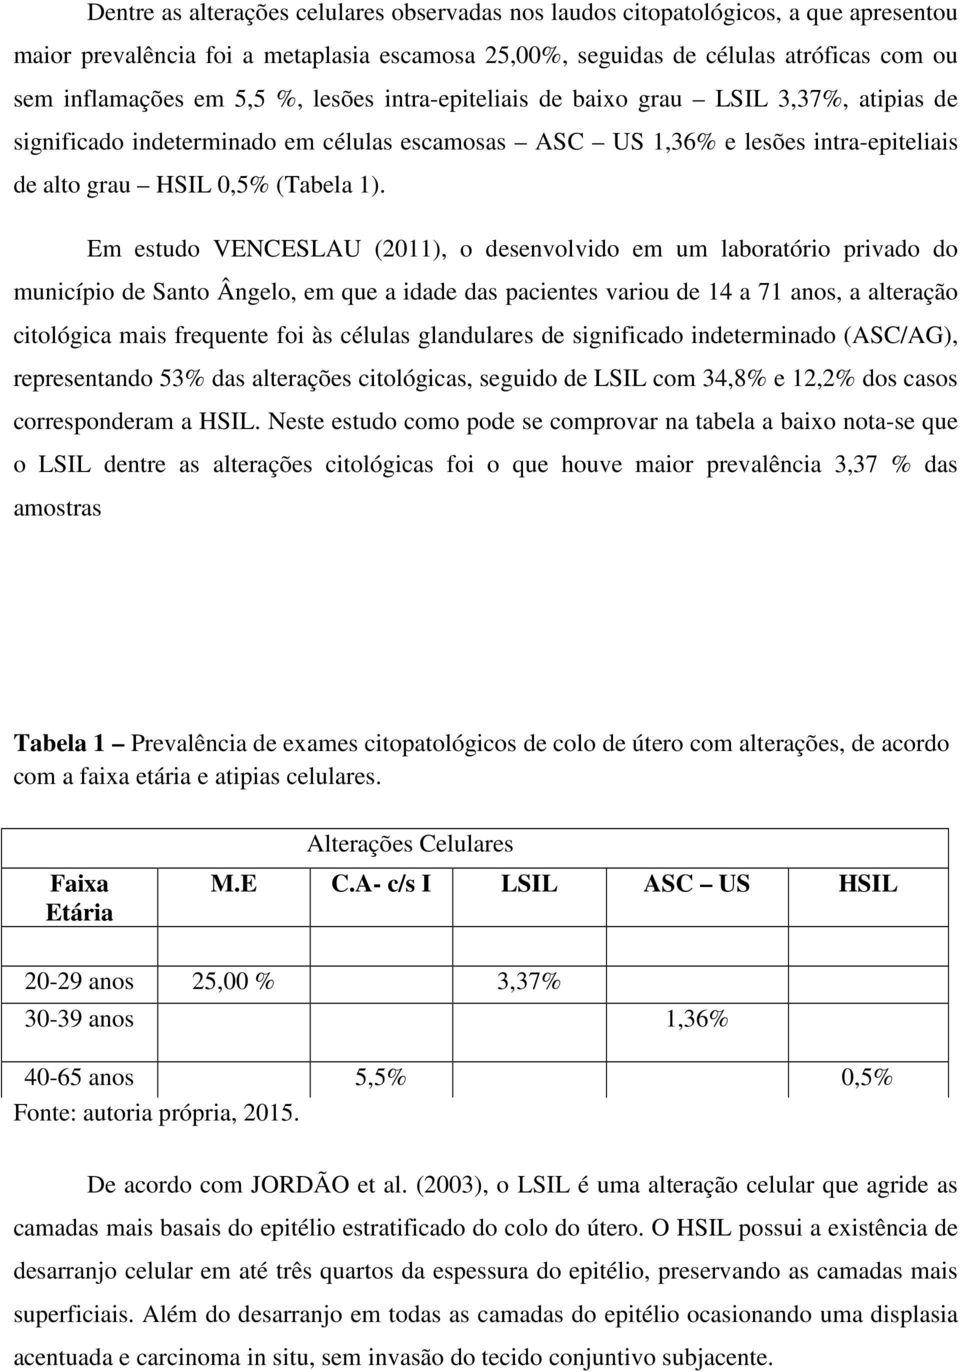 Em estudo VENCESLAU (2011), o desenvolvido em um laboratório privado do município de Santo Ângelo, em que a idade das pacientes variou de 14 a 71 anos, a alteração citológica mais frequente foi às